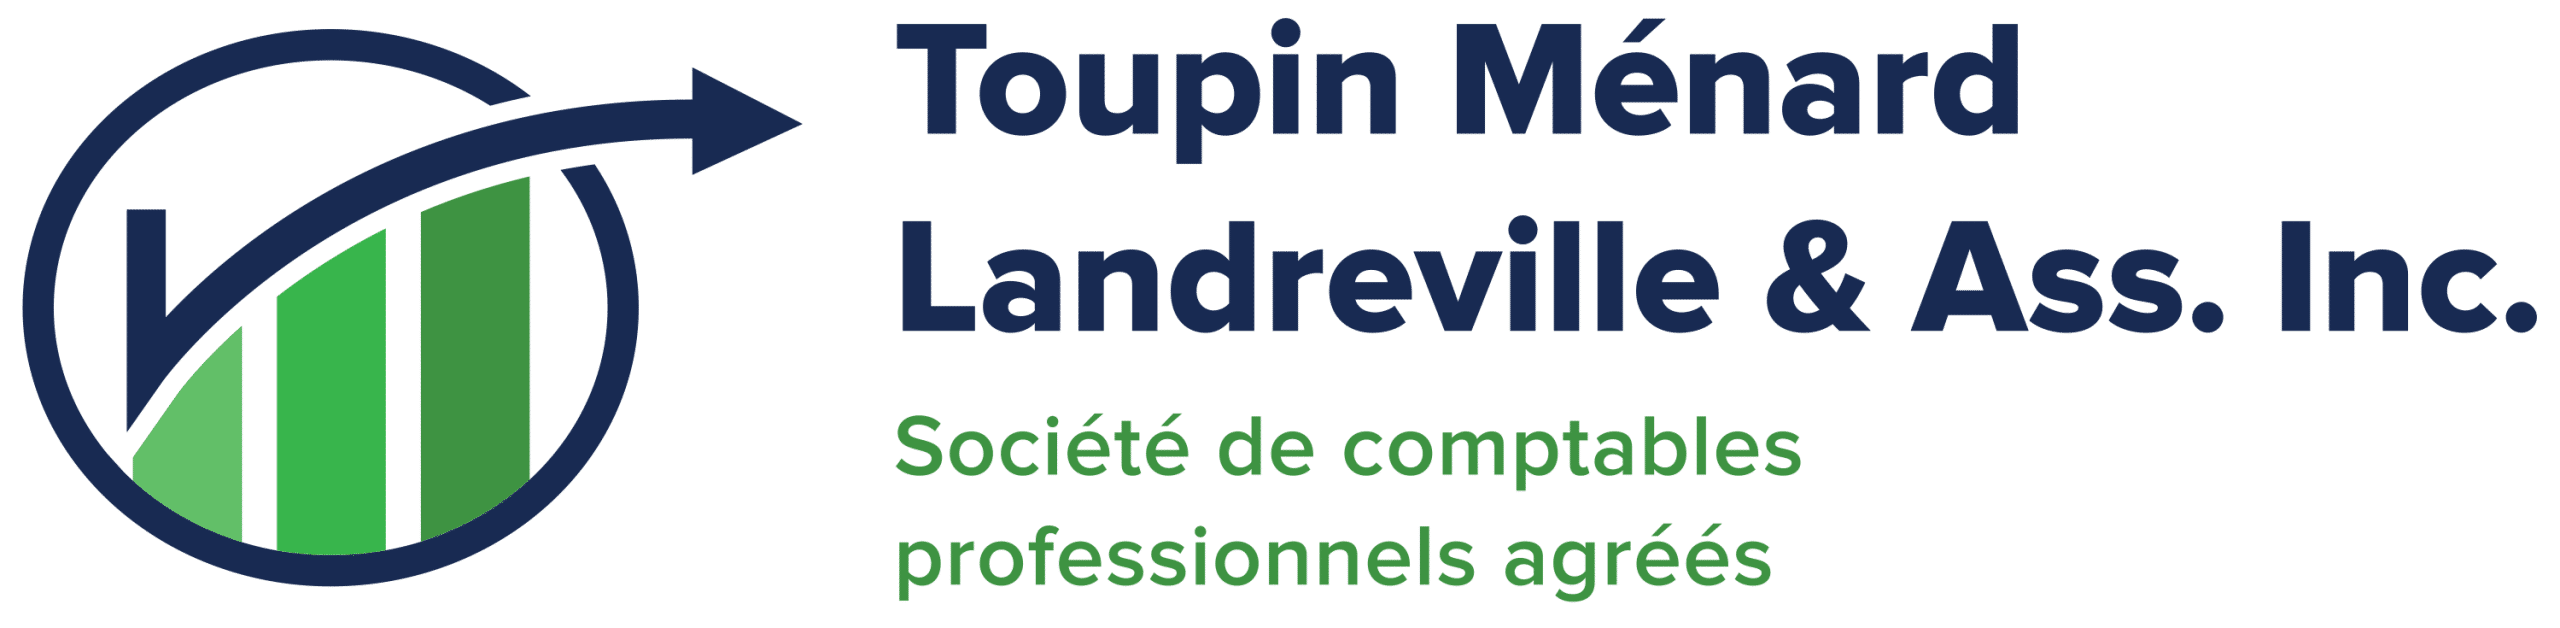 Toupin Ménard Landreville & Ass. Inc.